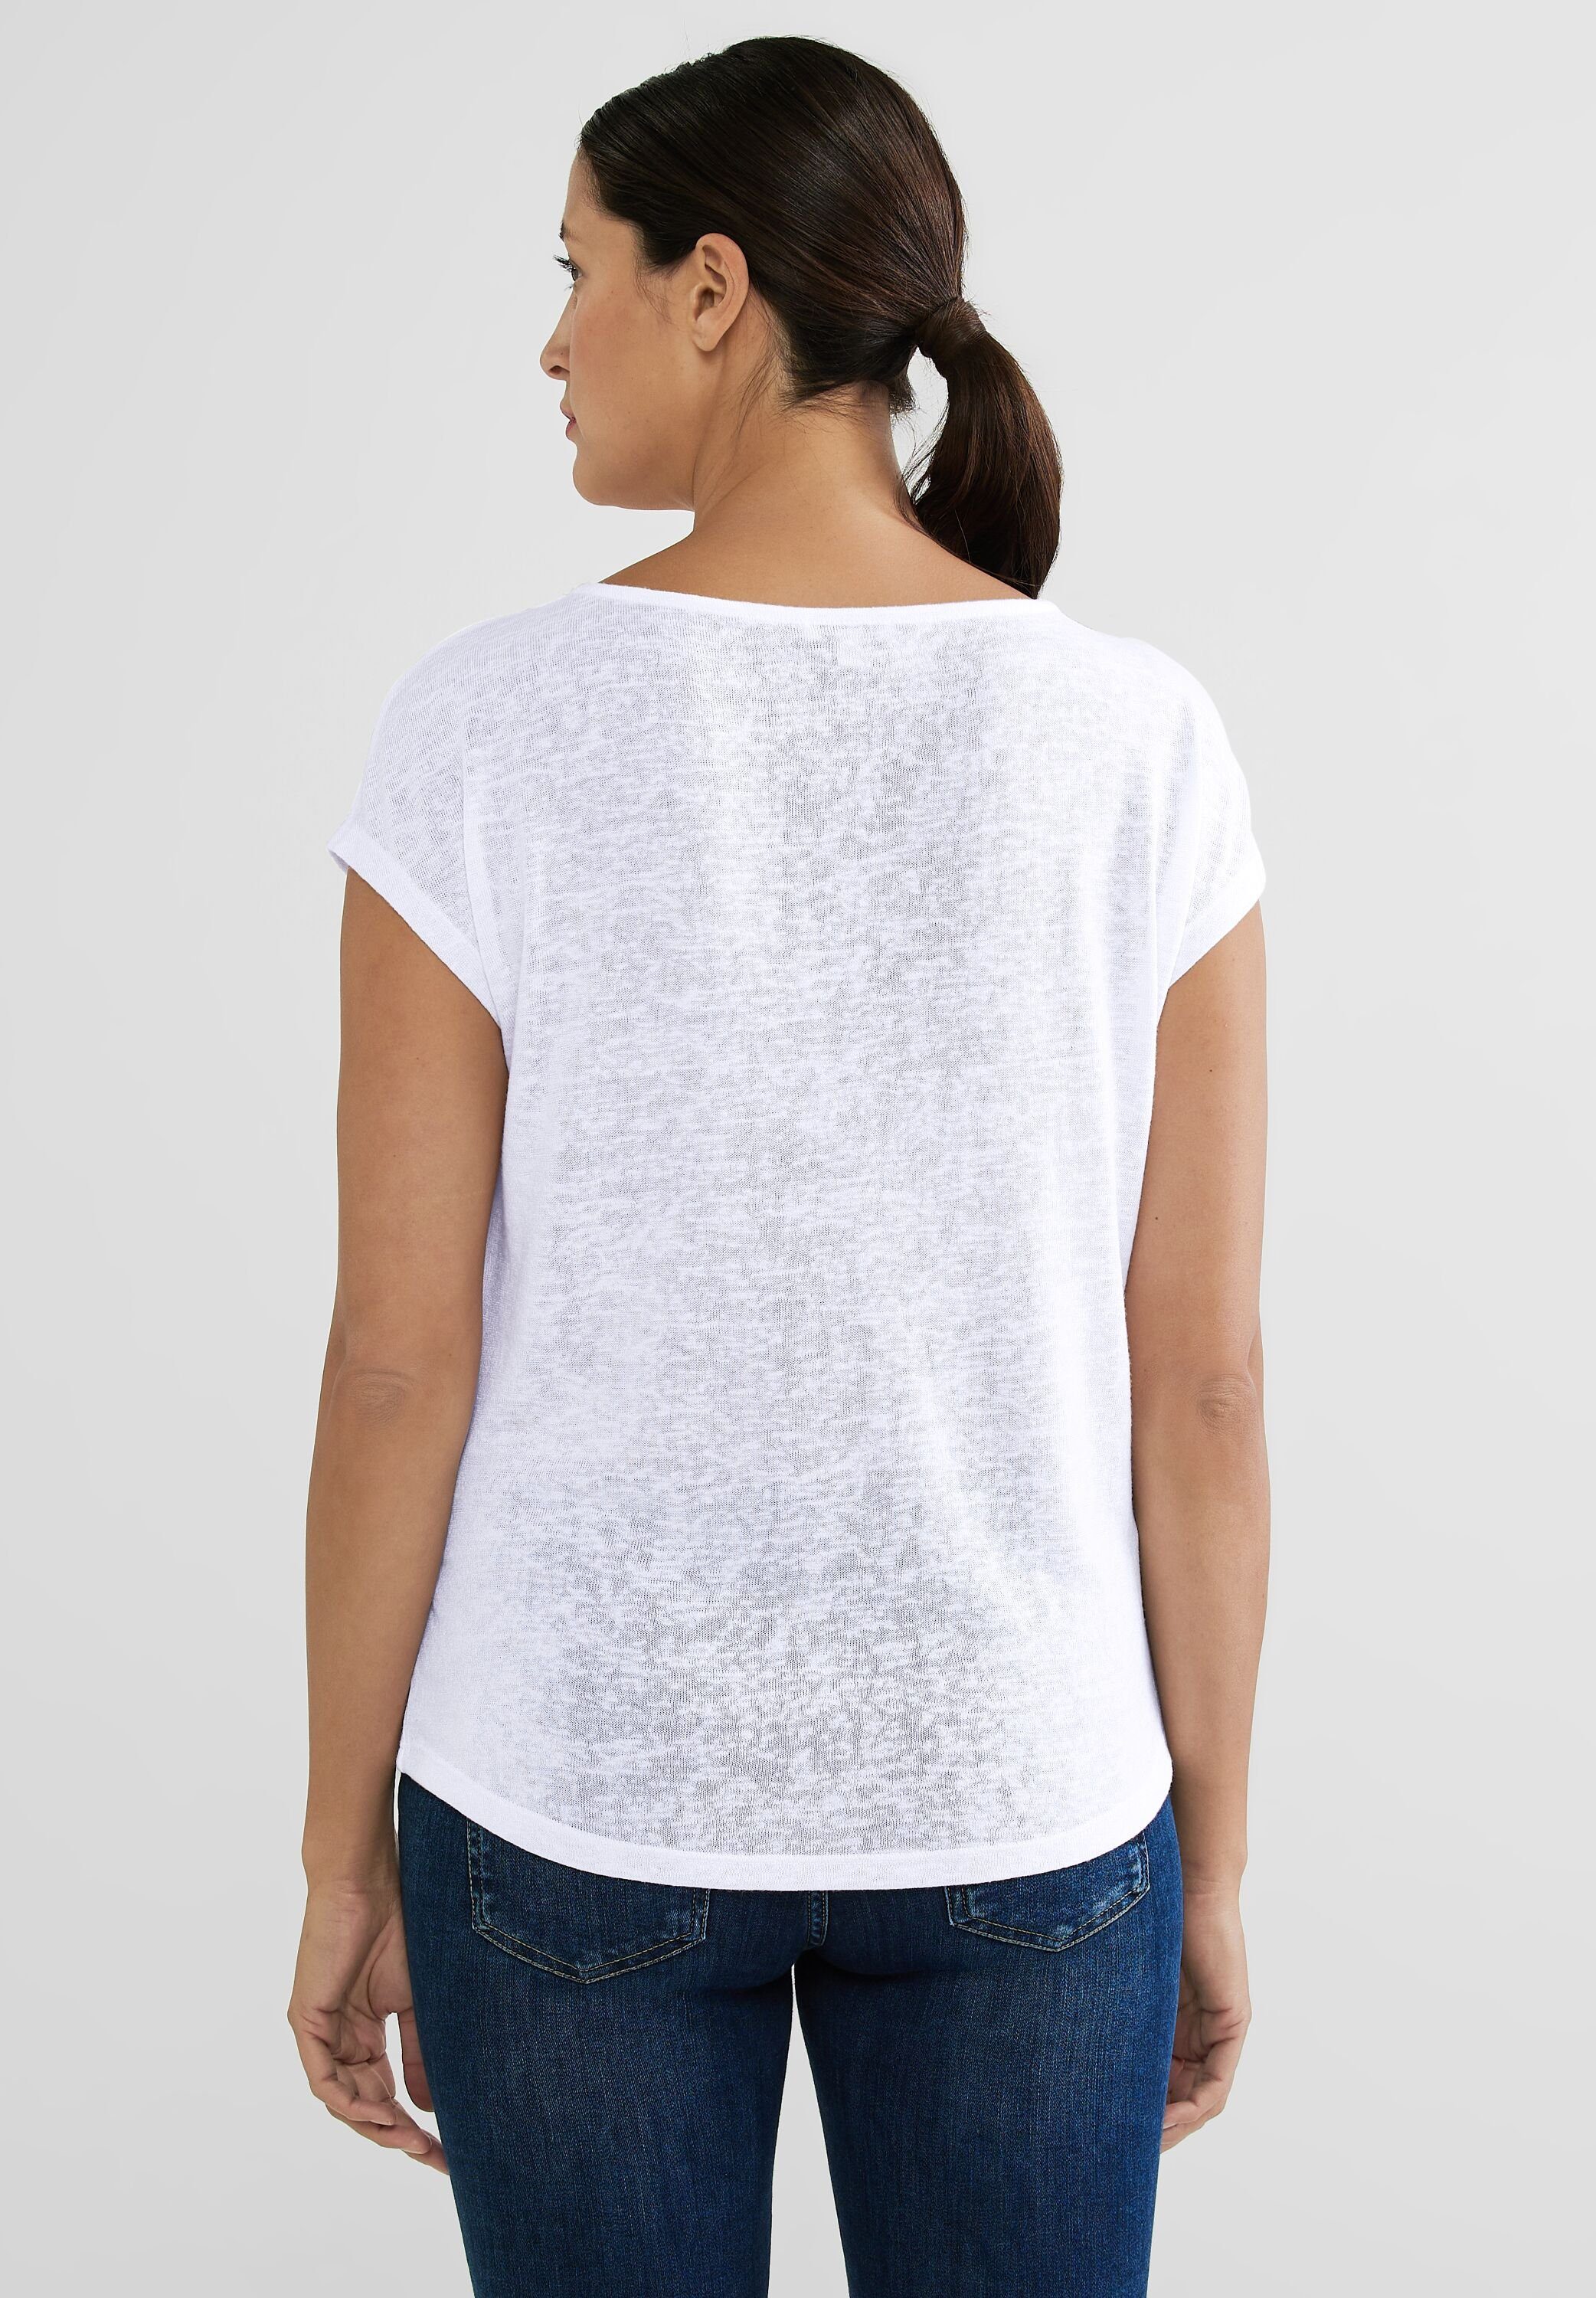 ONE überschnittenen Schultern T-Shirt White mit STREET